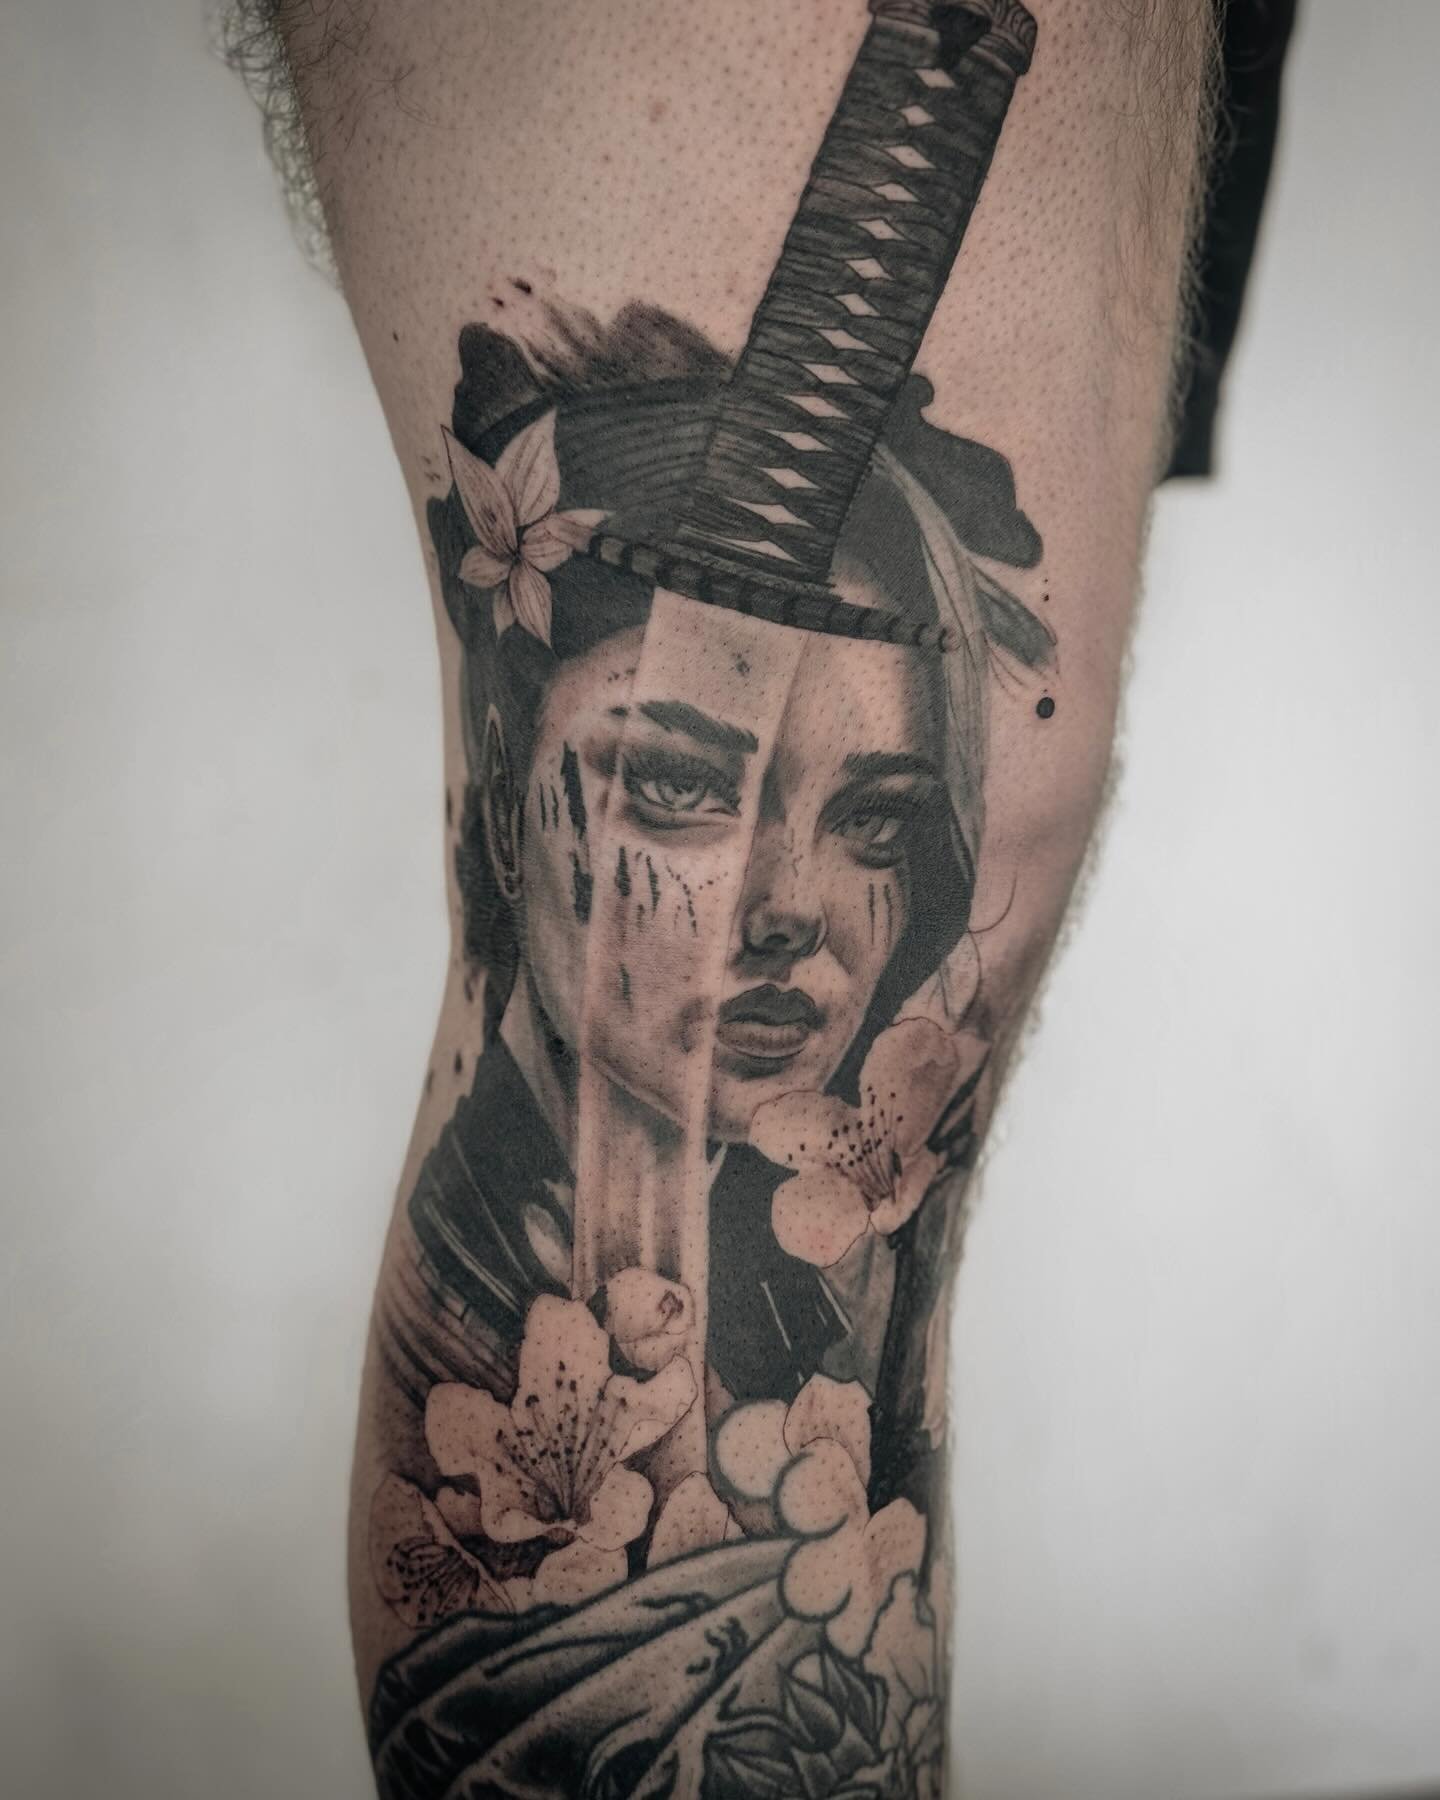 Geisha&mdash;&mdash;some parts healed, some parts fresh
.
.
.
#tattoo #tattoos #art #tattooartist #ink #inked #photooftheday #tattooed #tattoophotography #tattooideas #birsfelden #basel #studio #switzerland #ink #tattooformen #tattooing #zurich #japa